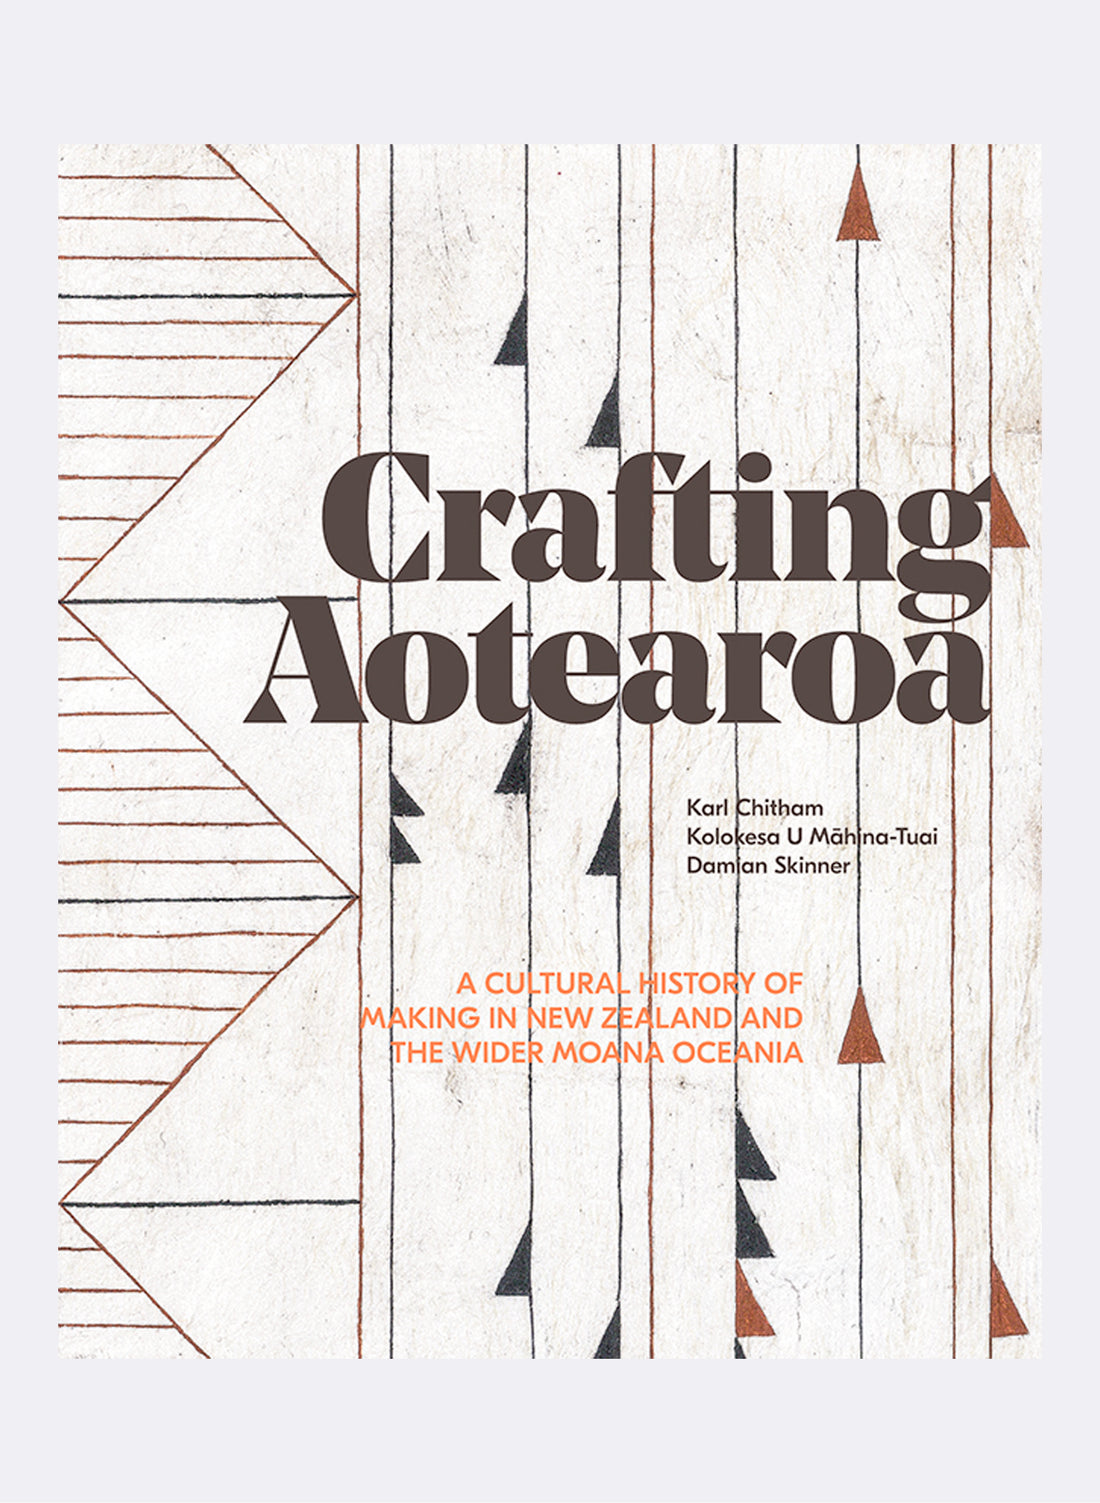 Crafting Aotearoa